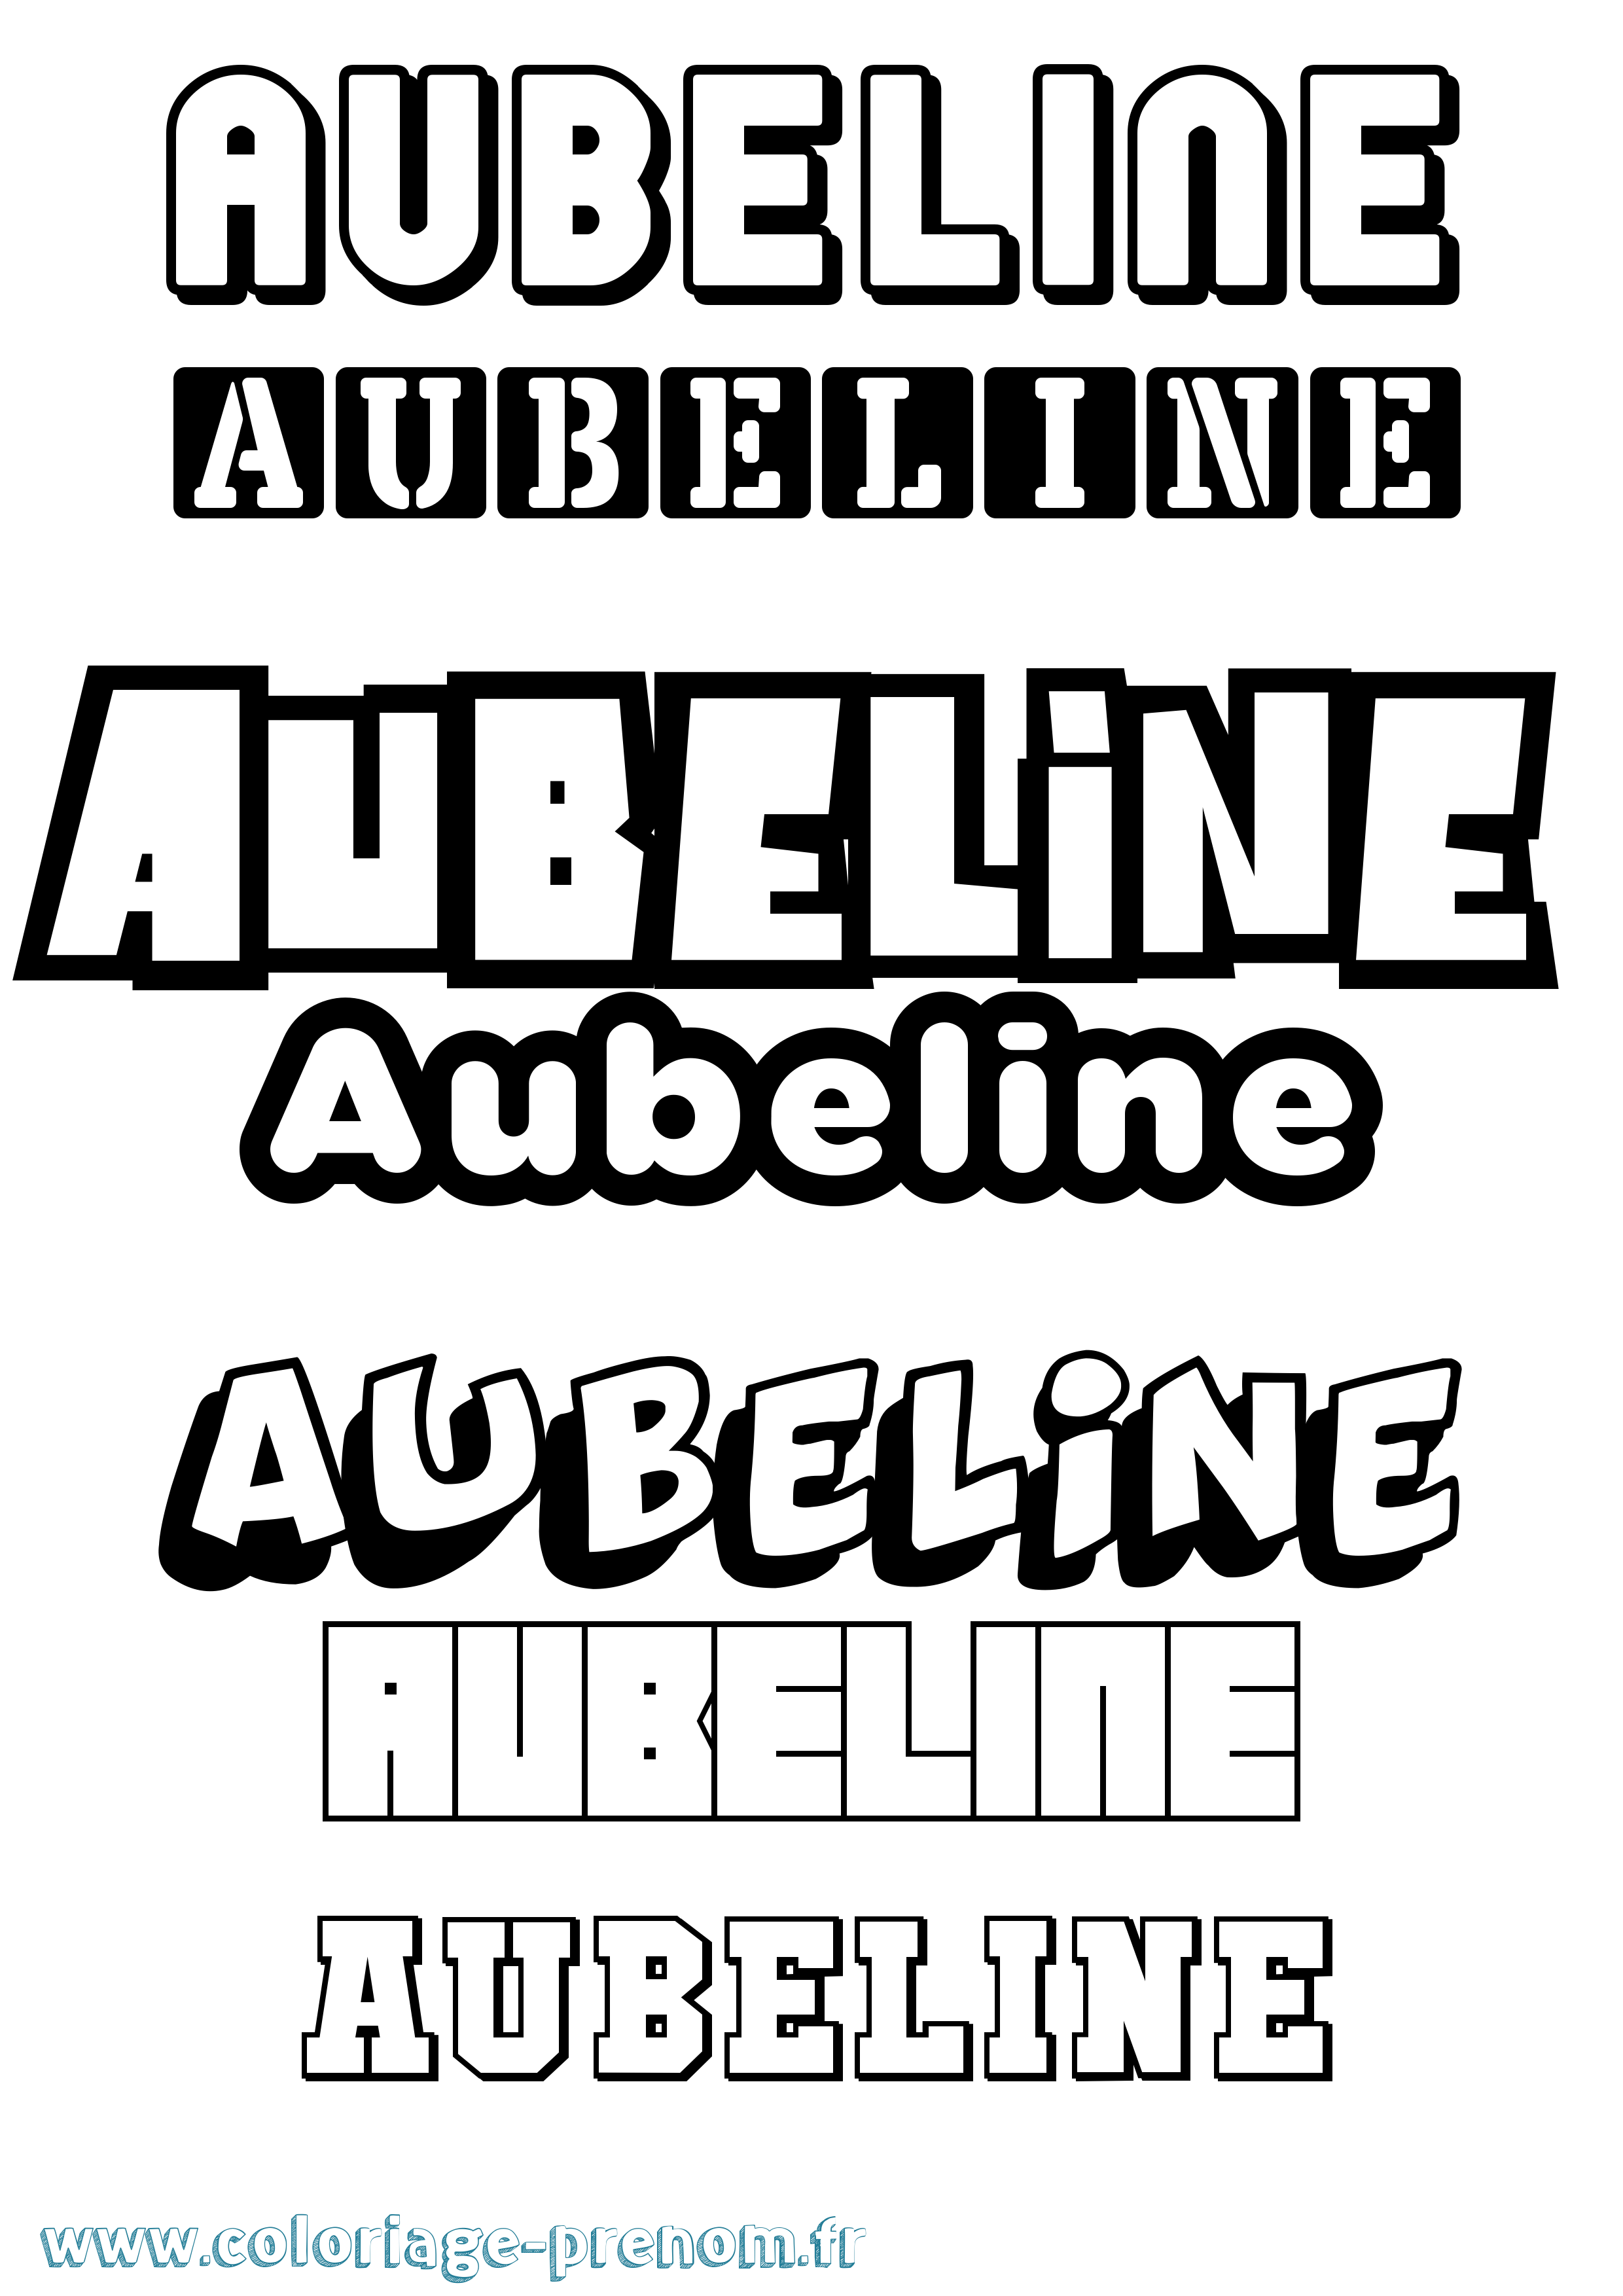 Coloriage prénom Aubeline Simple